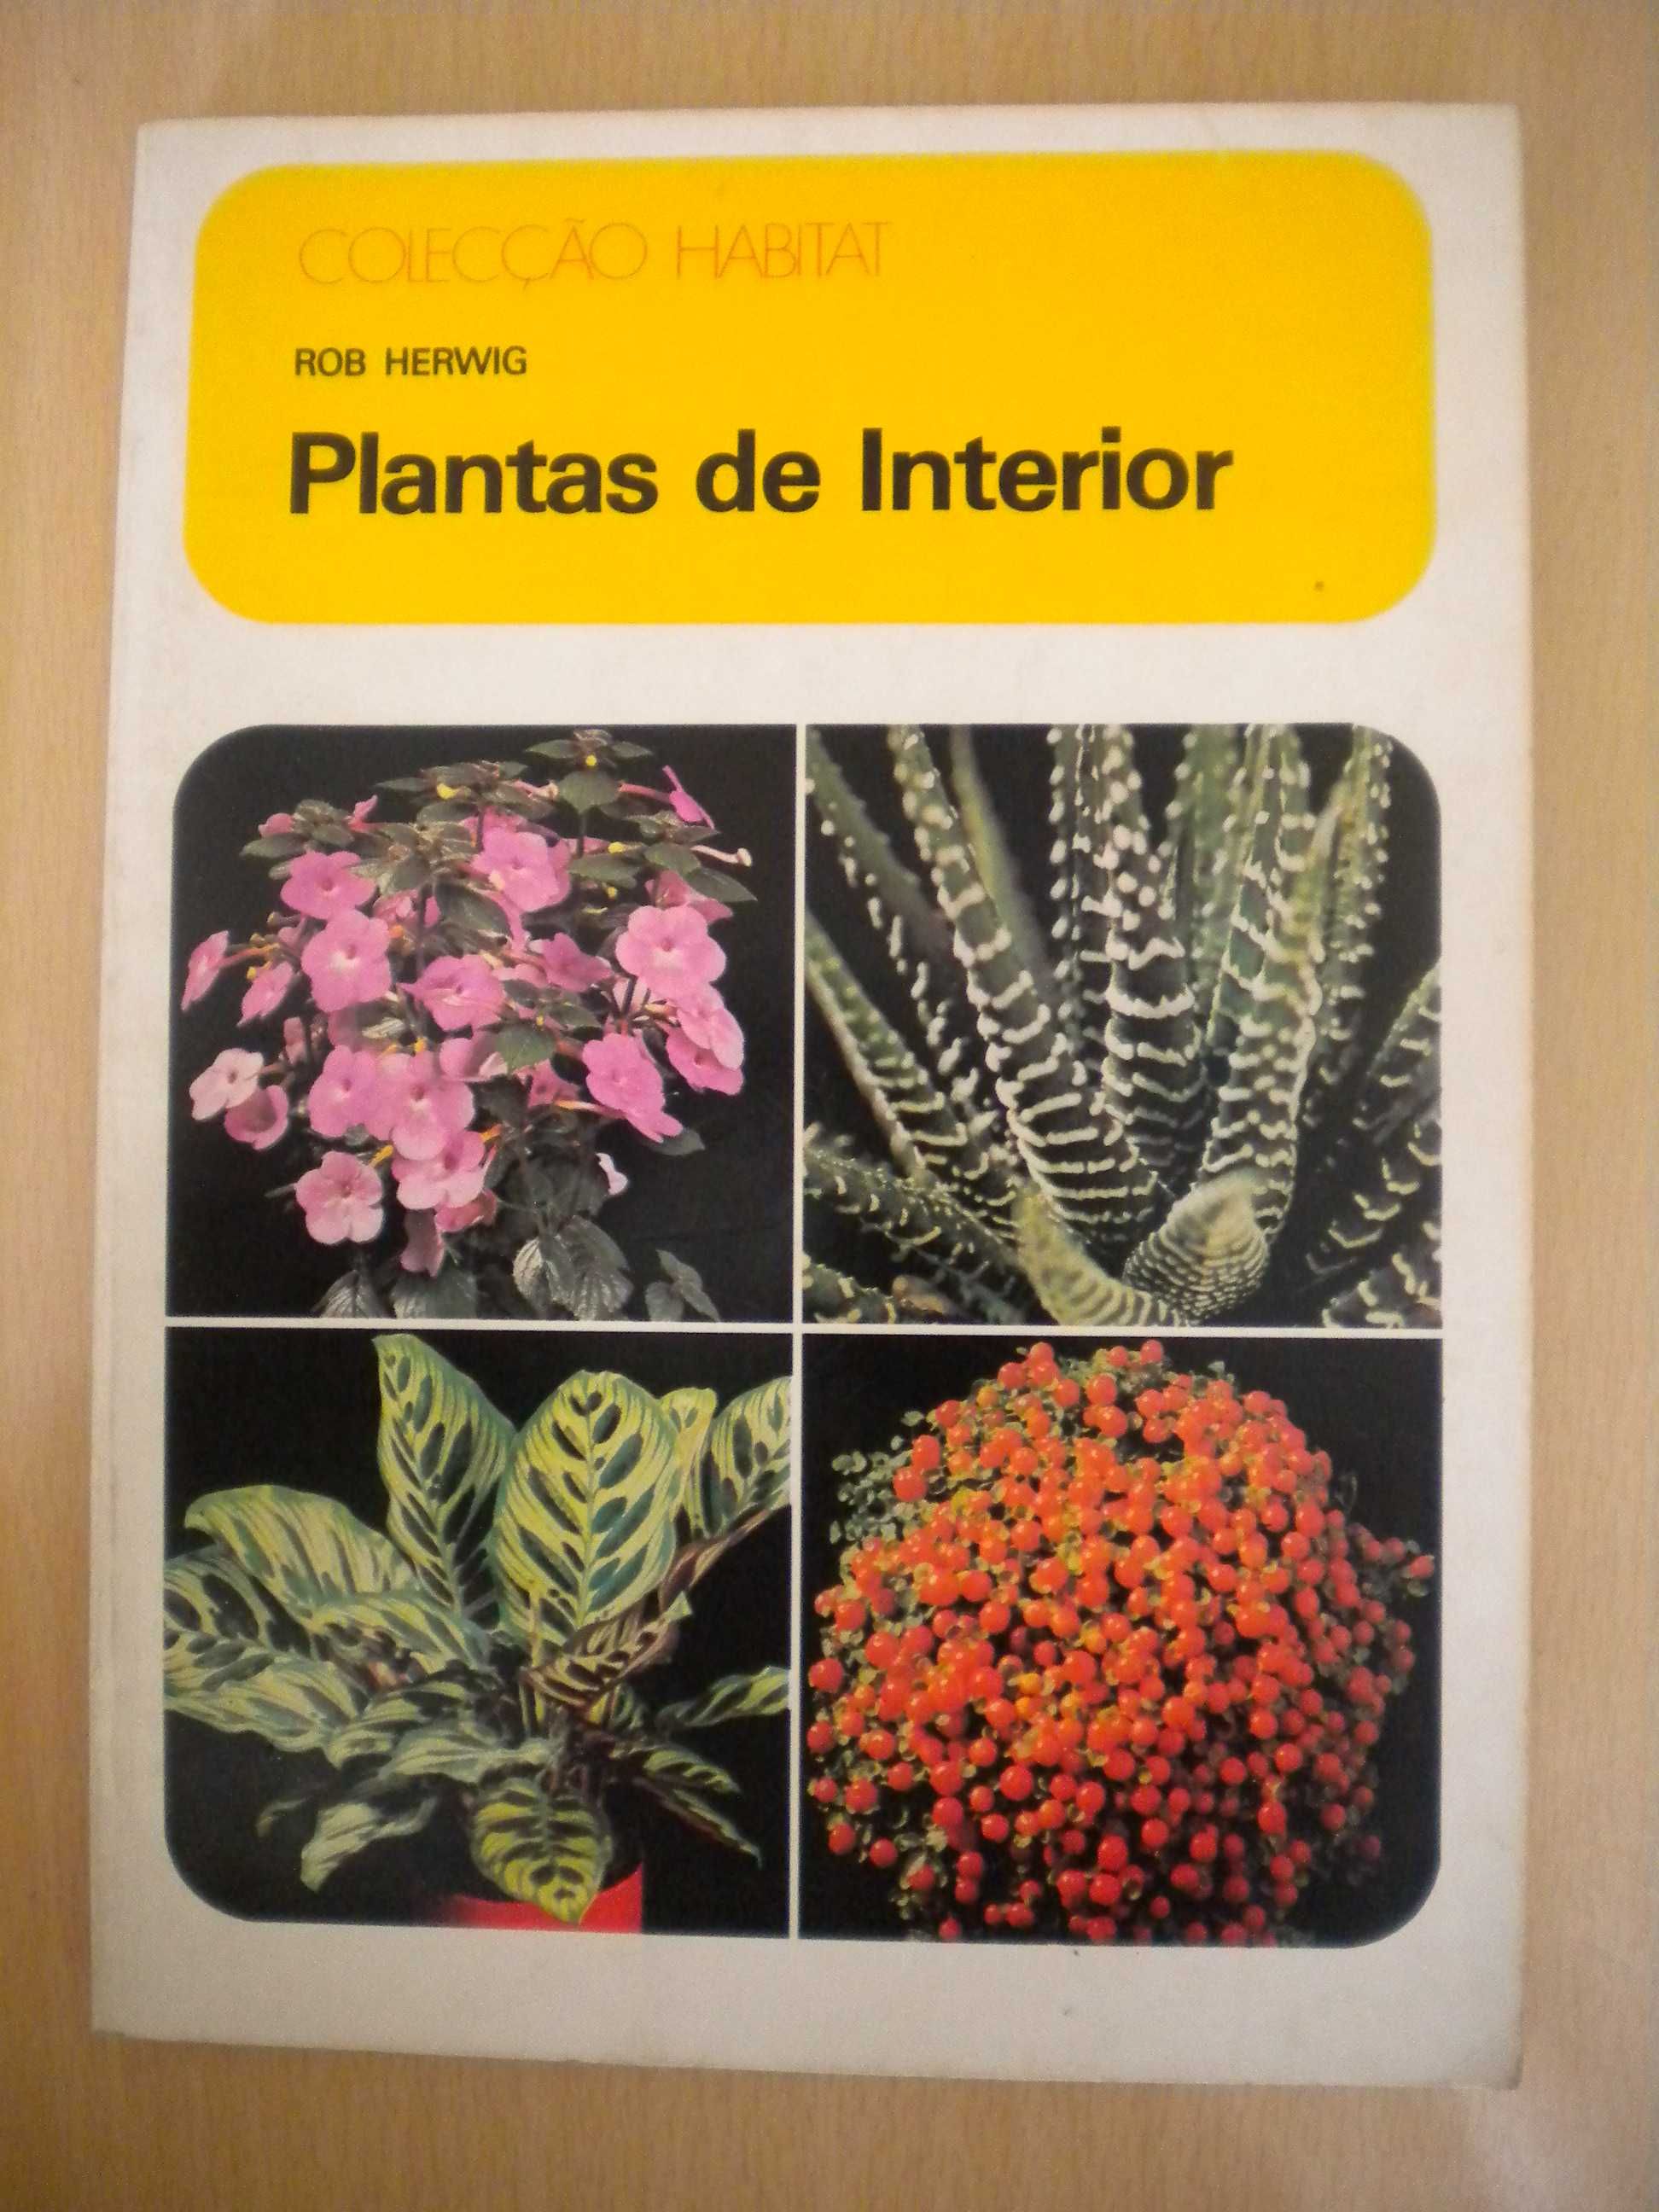 Plantas de Interior
de Rob Herwig